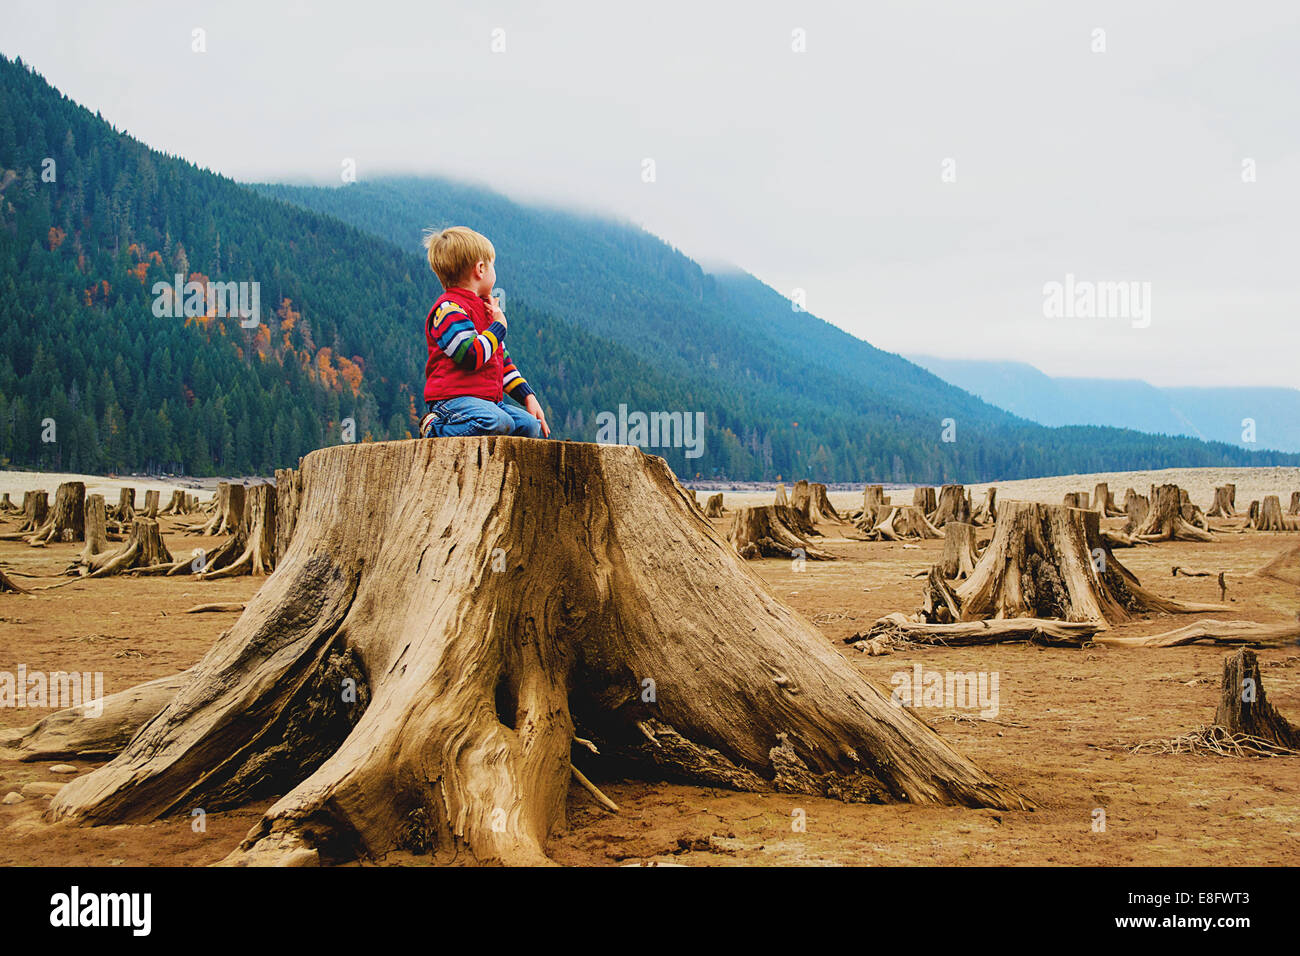 Boy kneeling on tree stump, USA Stock Photo